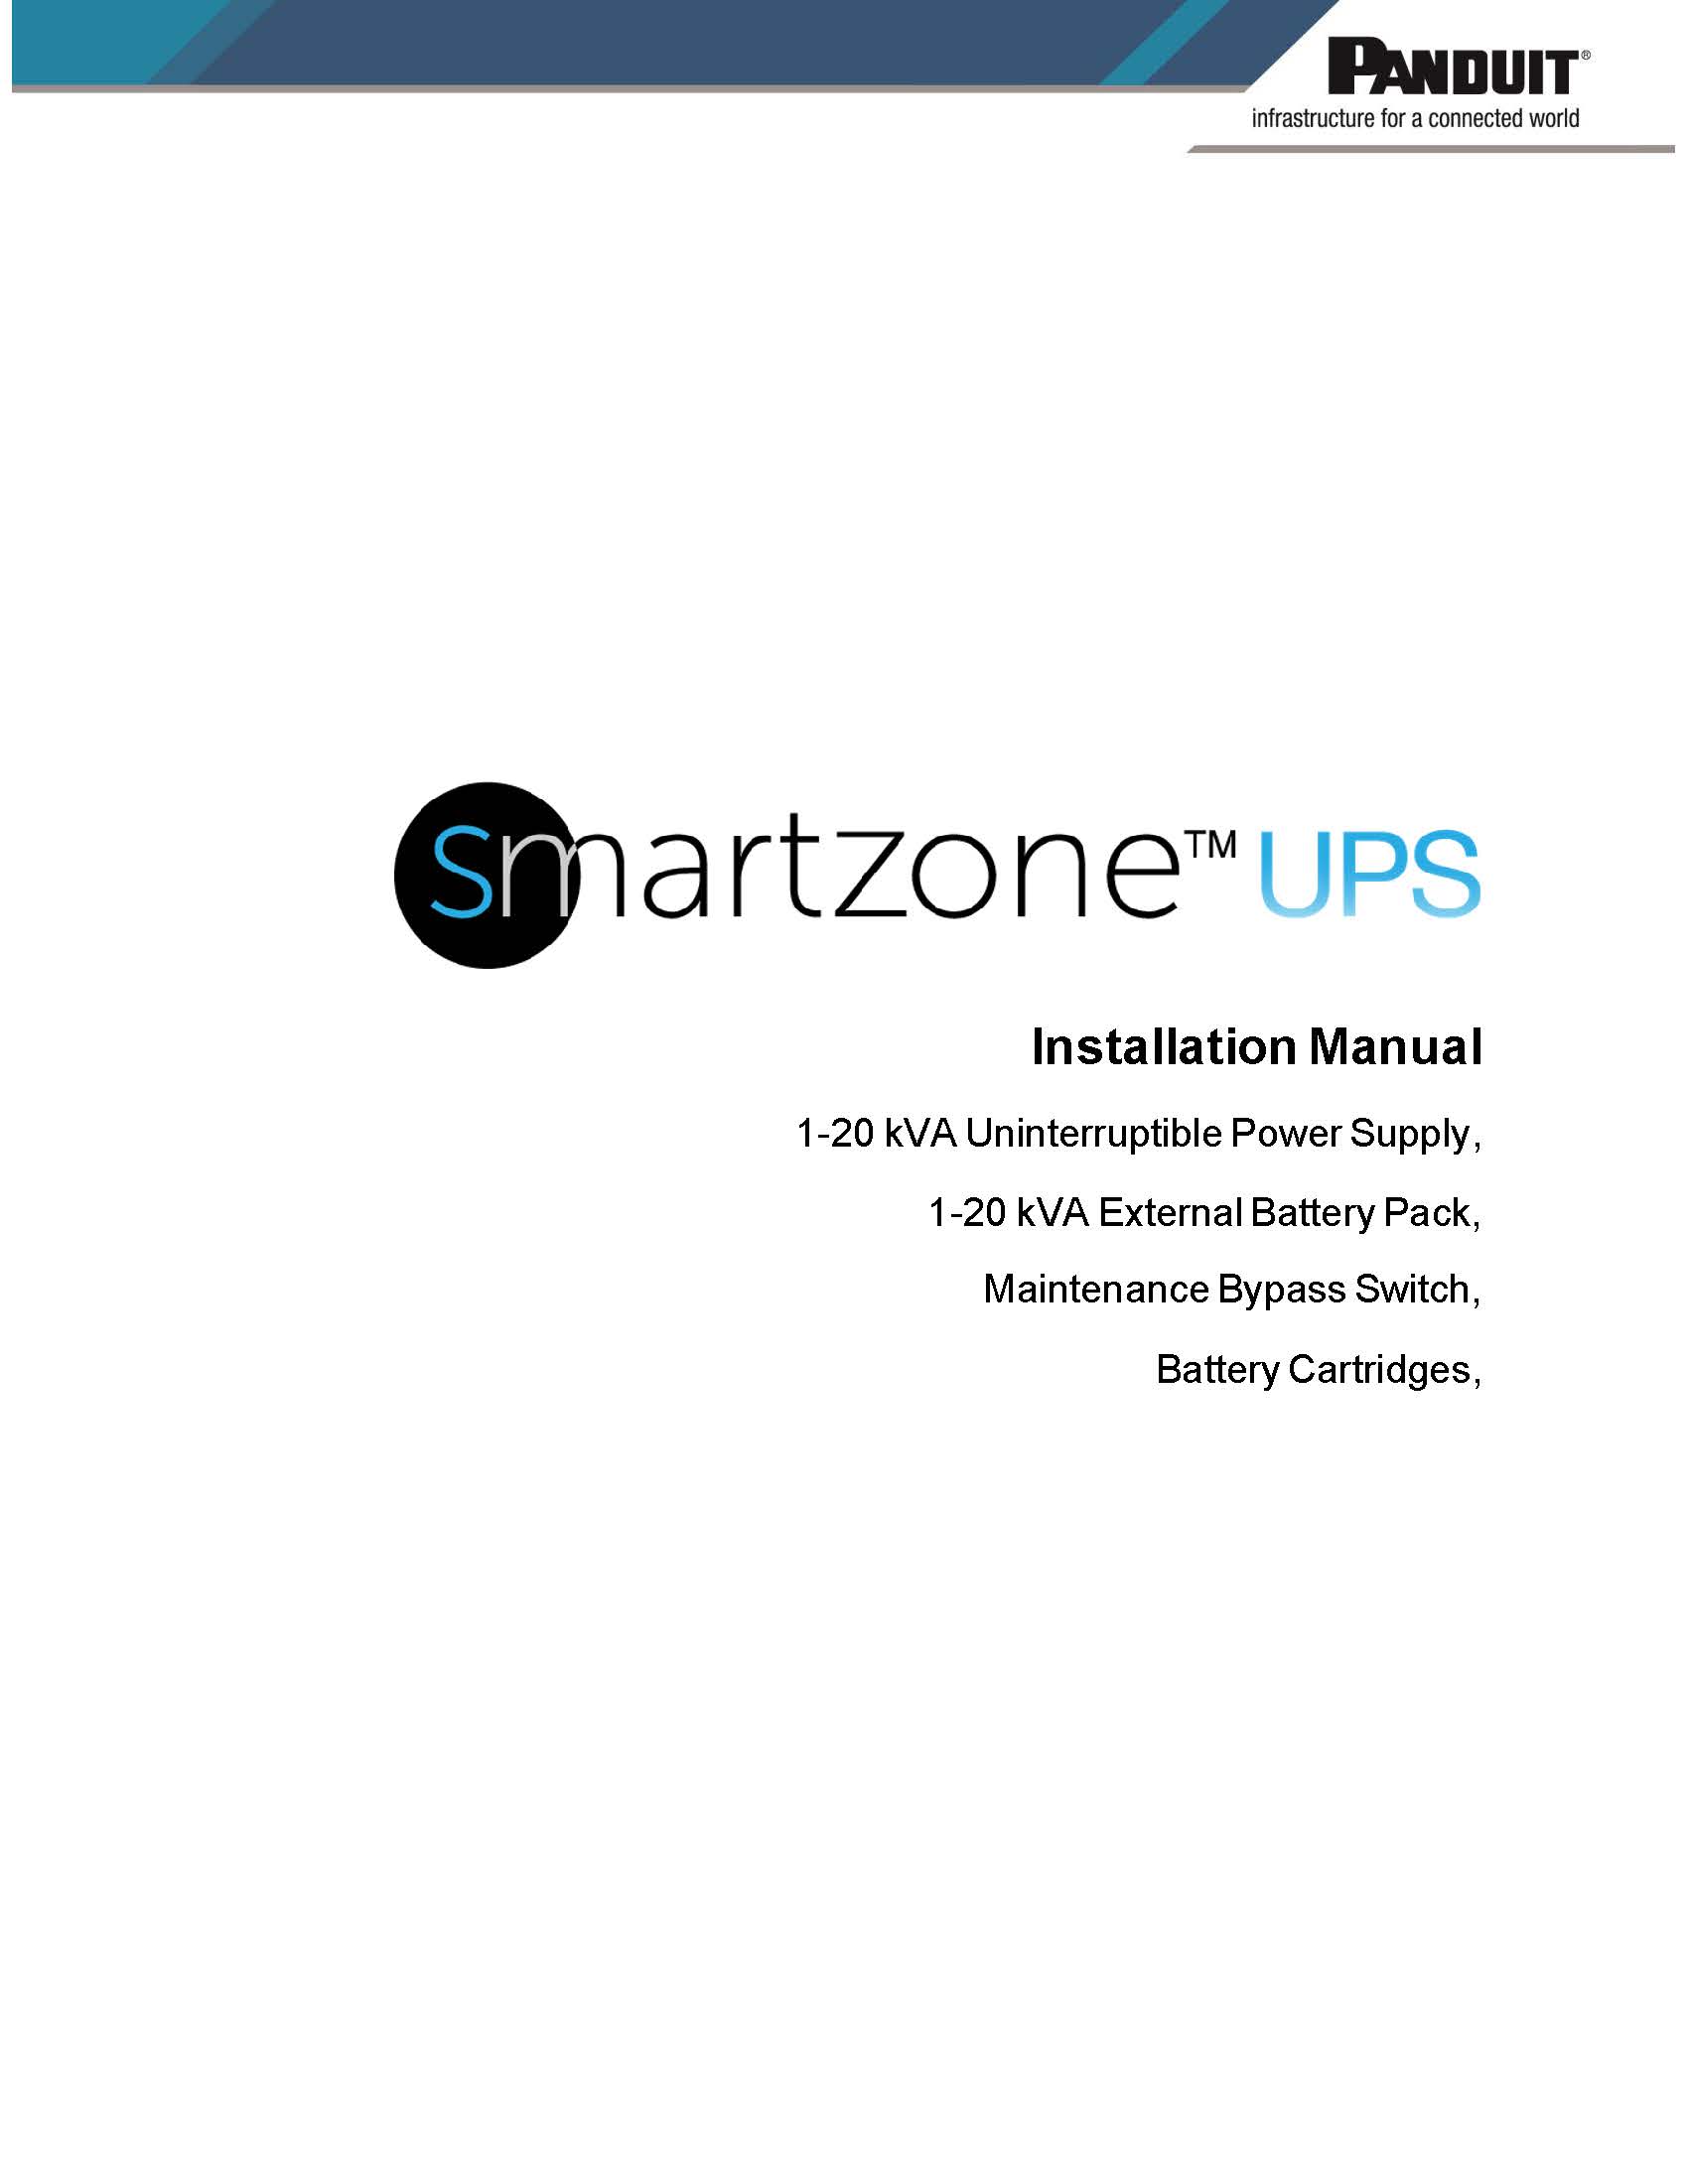 SZ UPS 1-20 kVA Installation Manual.jpg